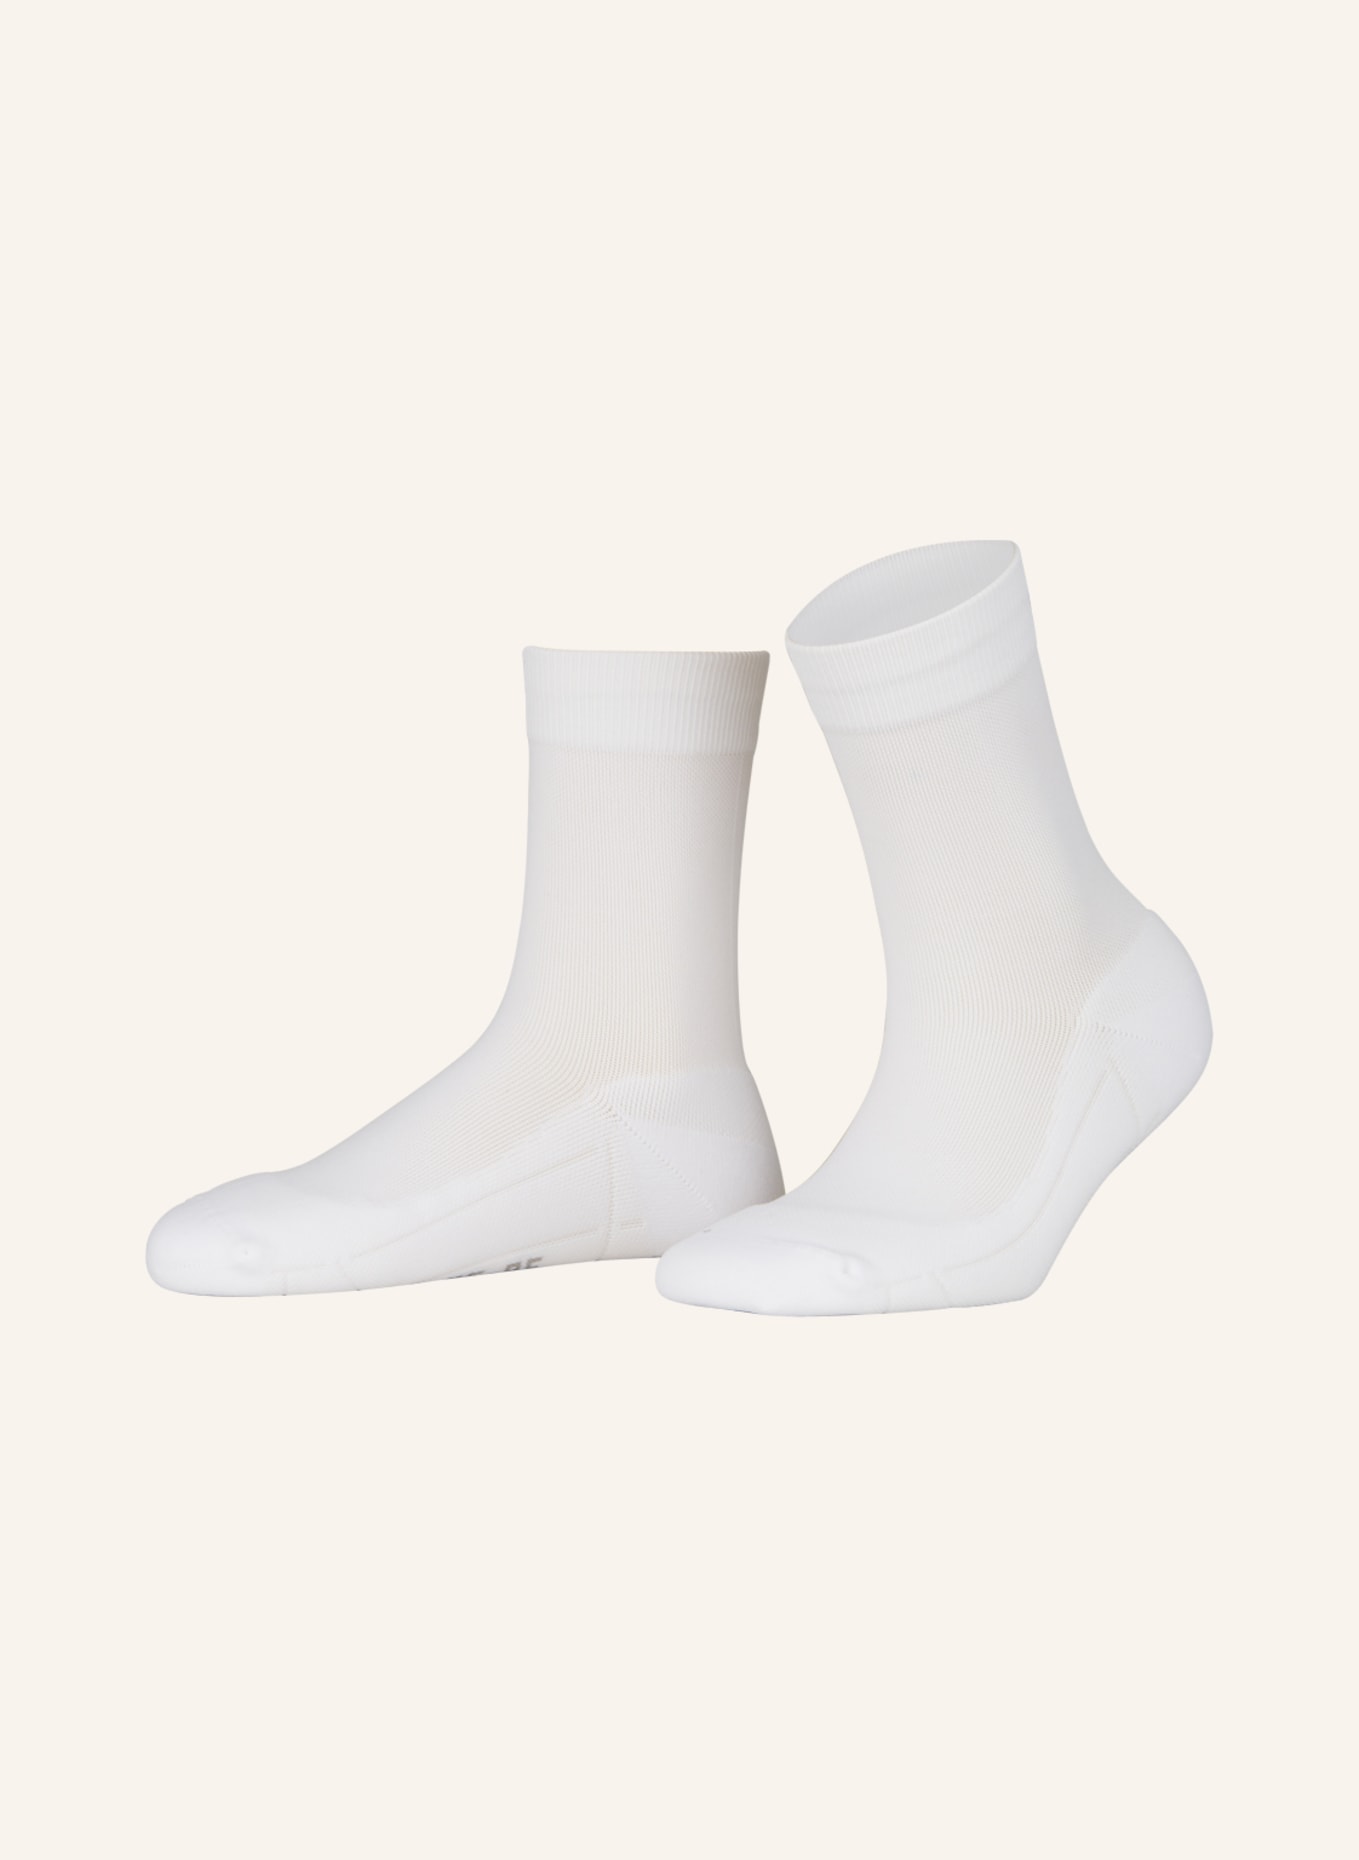 ITEM m6 Socks SNEAKER CONSCIOUS COTTON PIQUÉ, Color: WHITE (Image 1)